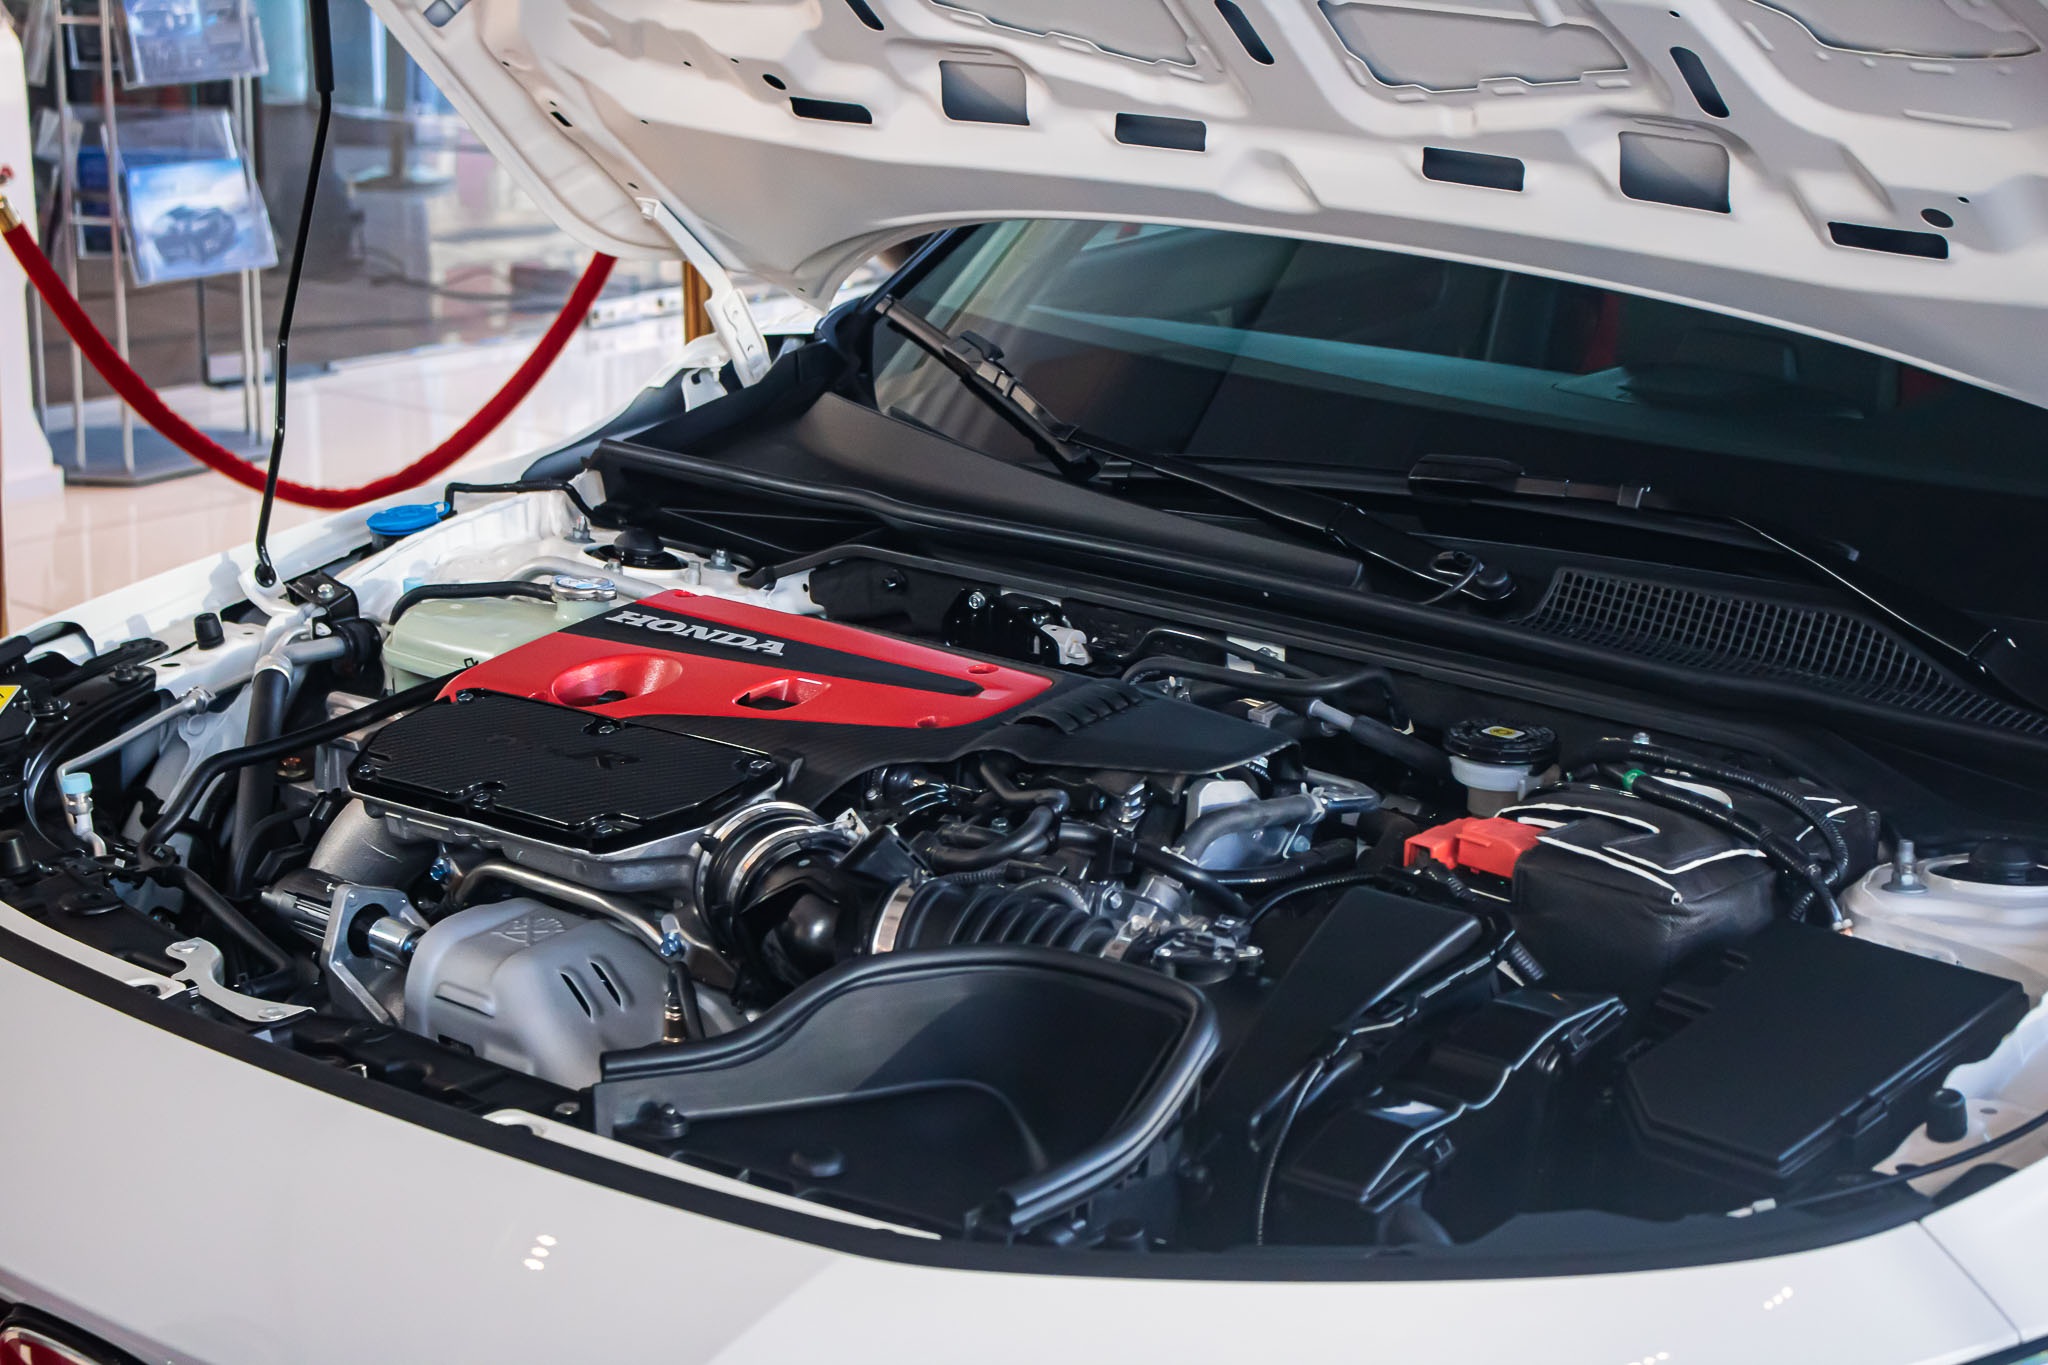 Cường Đôla bổ sung Honda Civic Type R vào dàn siêu xe hơn 100 tỷ đồng - 5 - cscplus.work